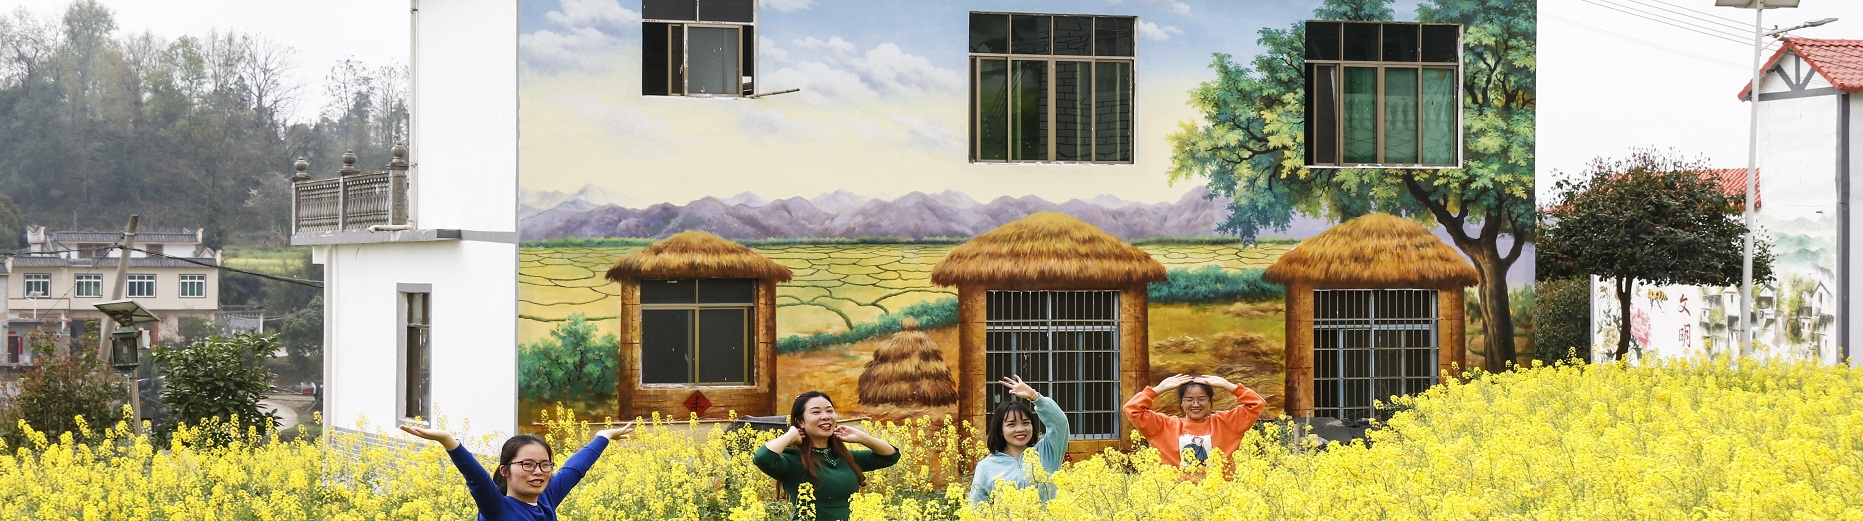 Nandan cultural wall promotes rural tourism development